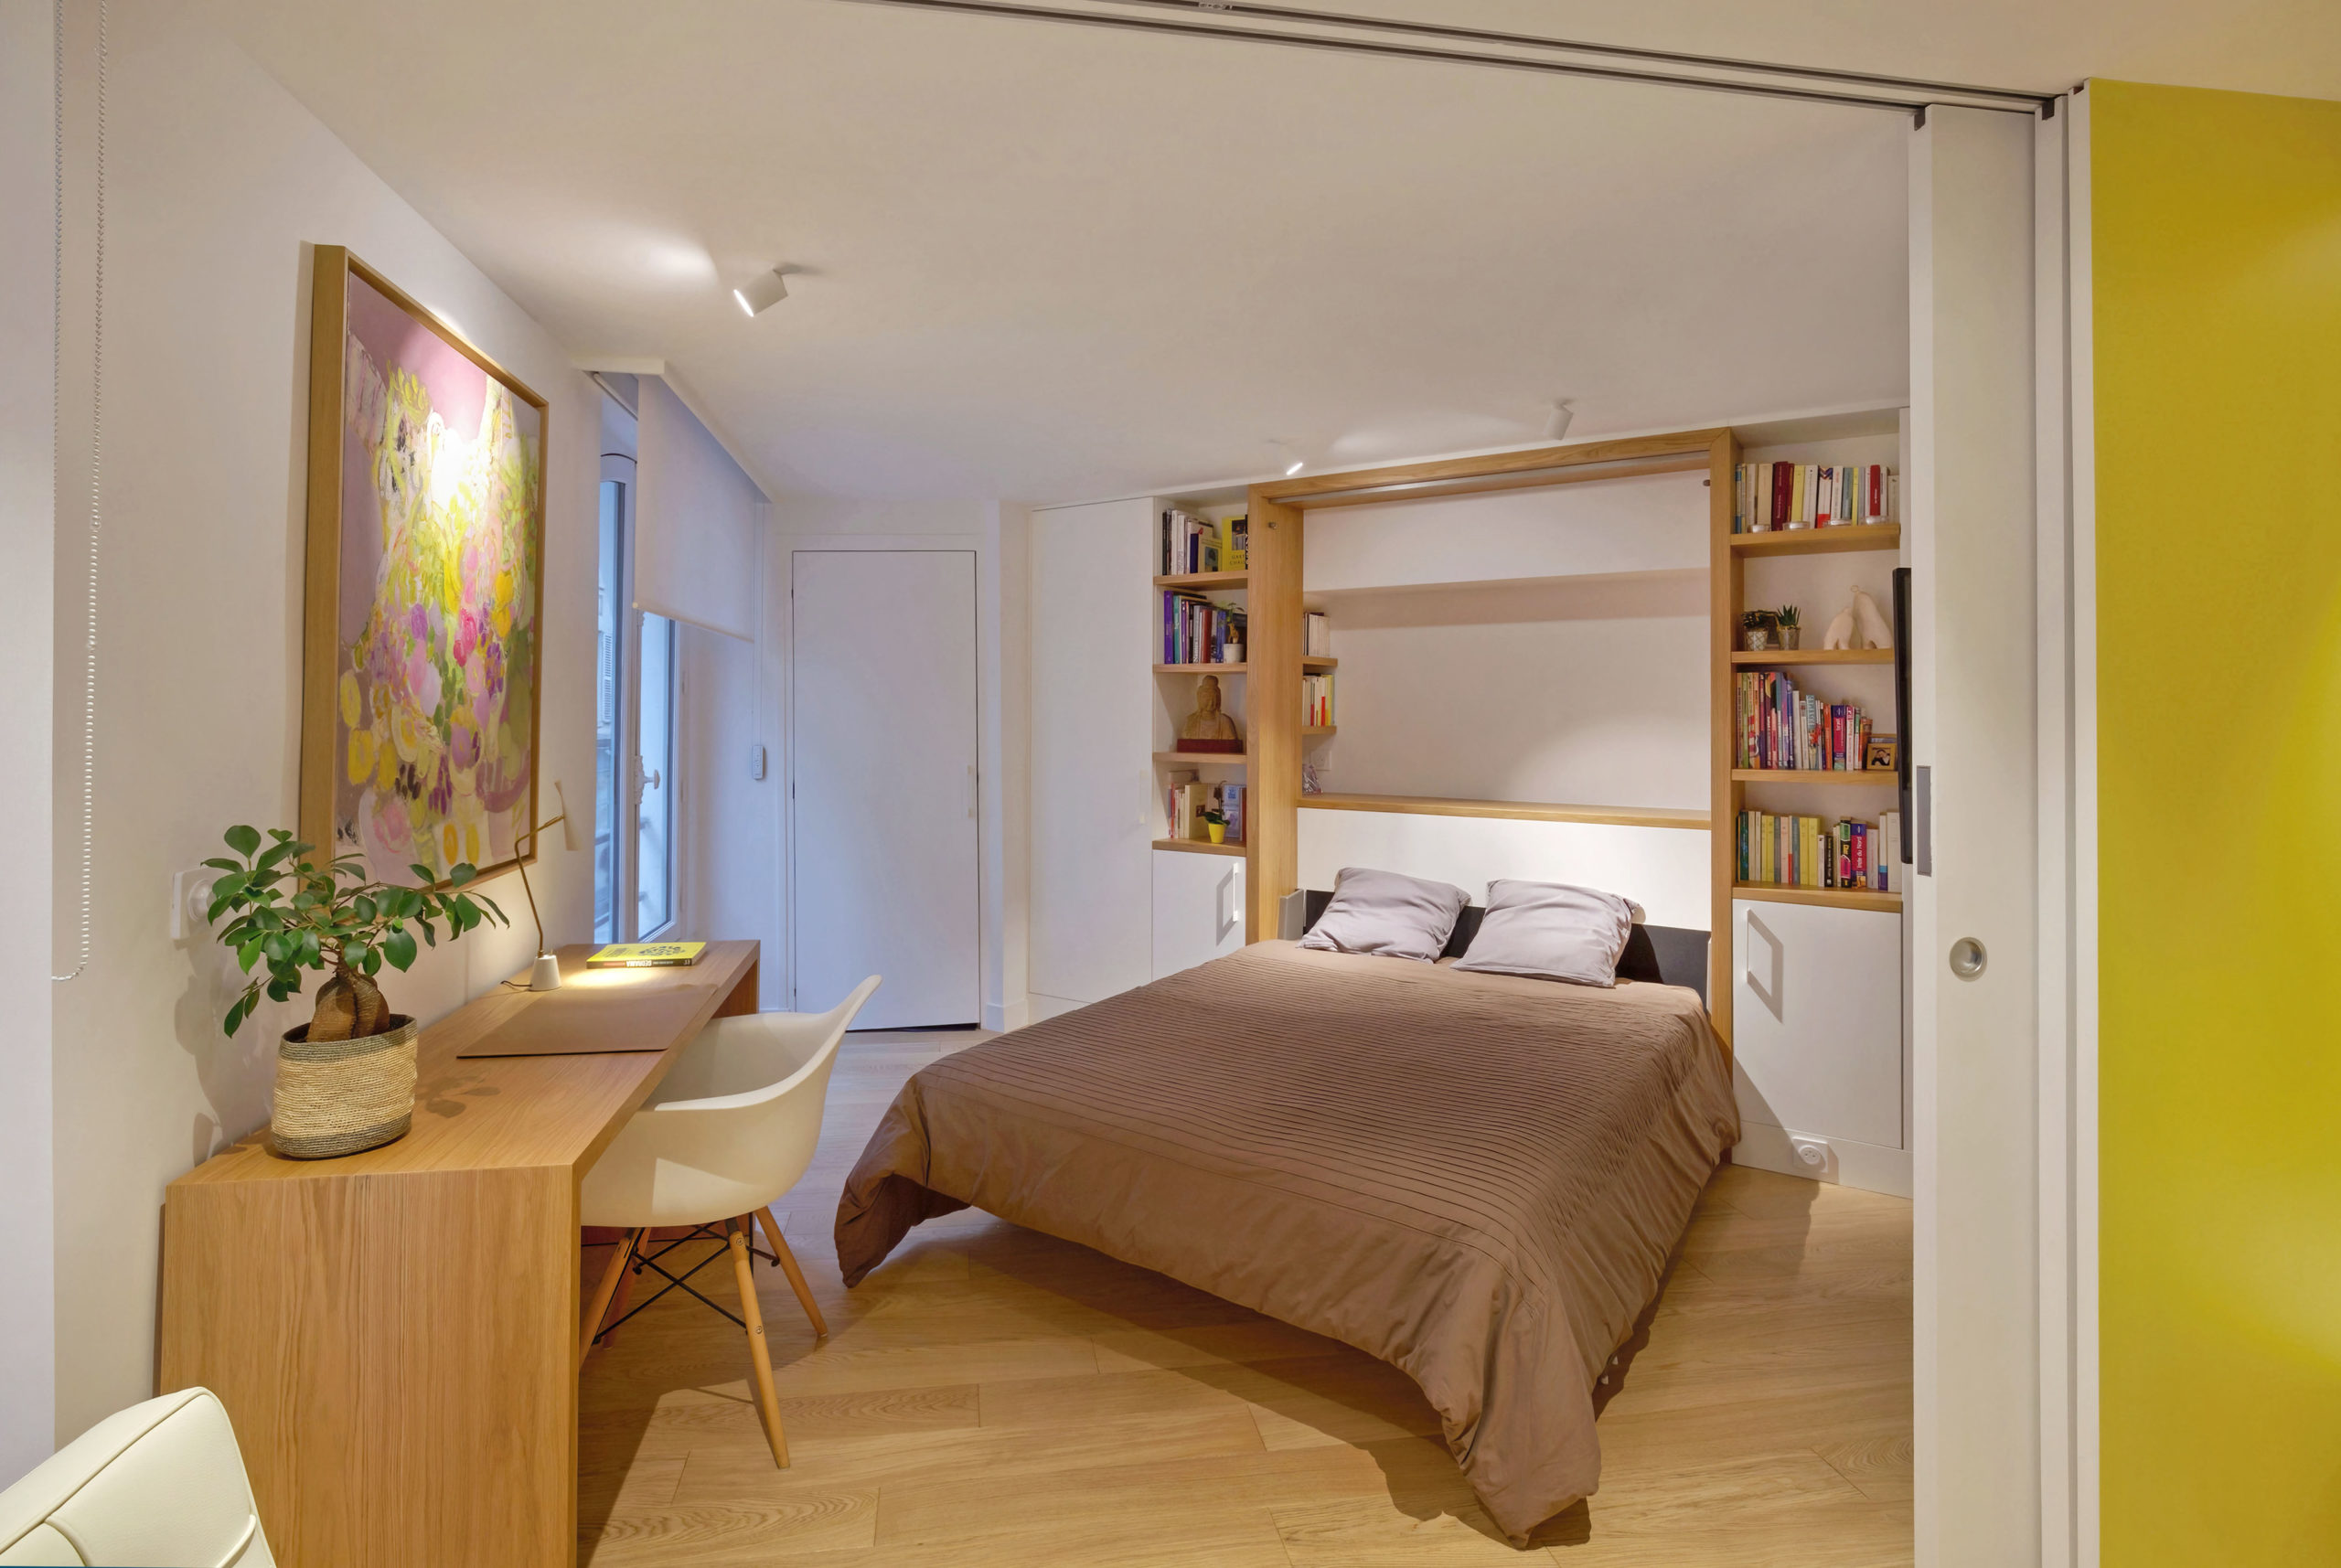 Chambre d'amis appartement pied à terre parisien - Flora Auvray Architecte d'intérieur